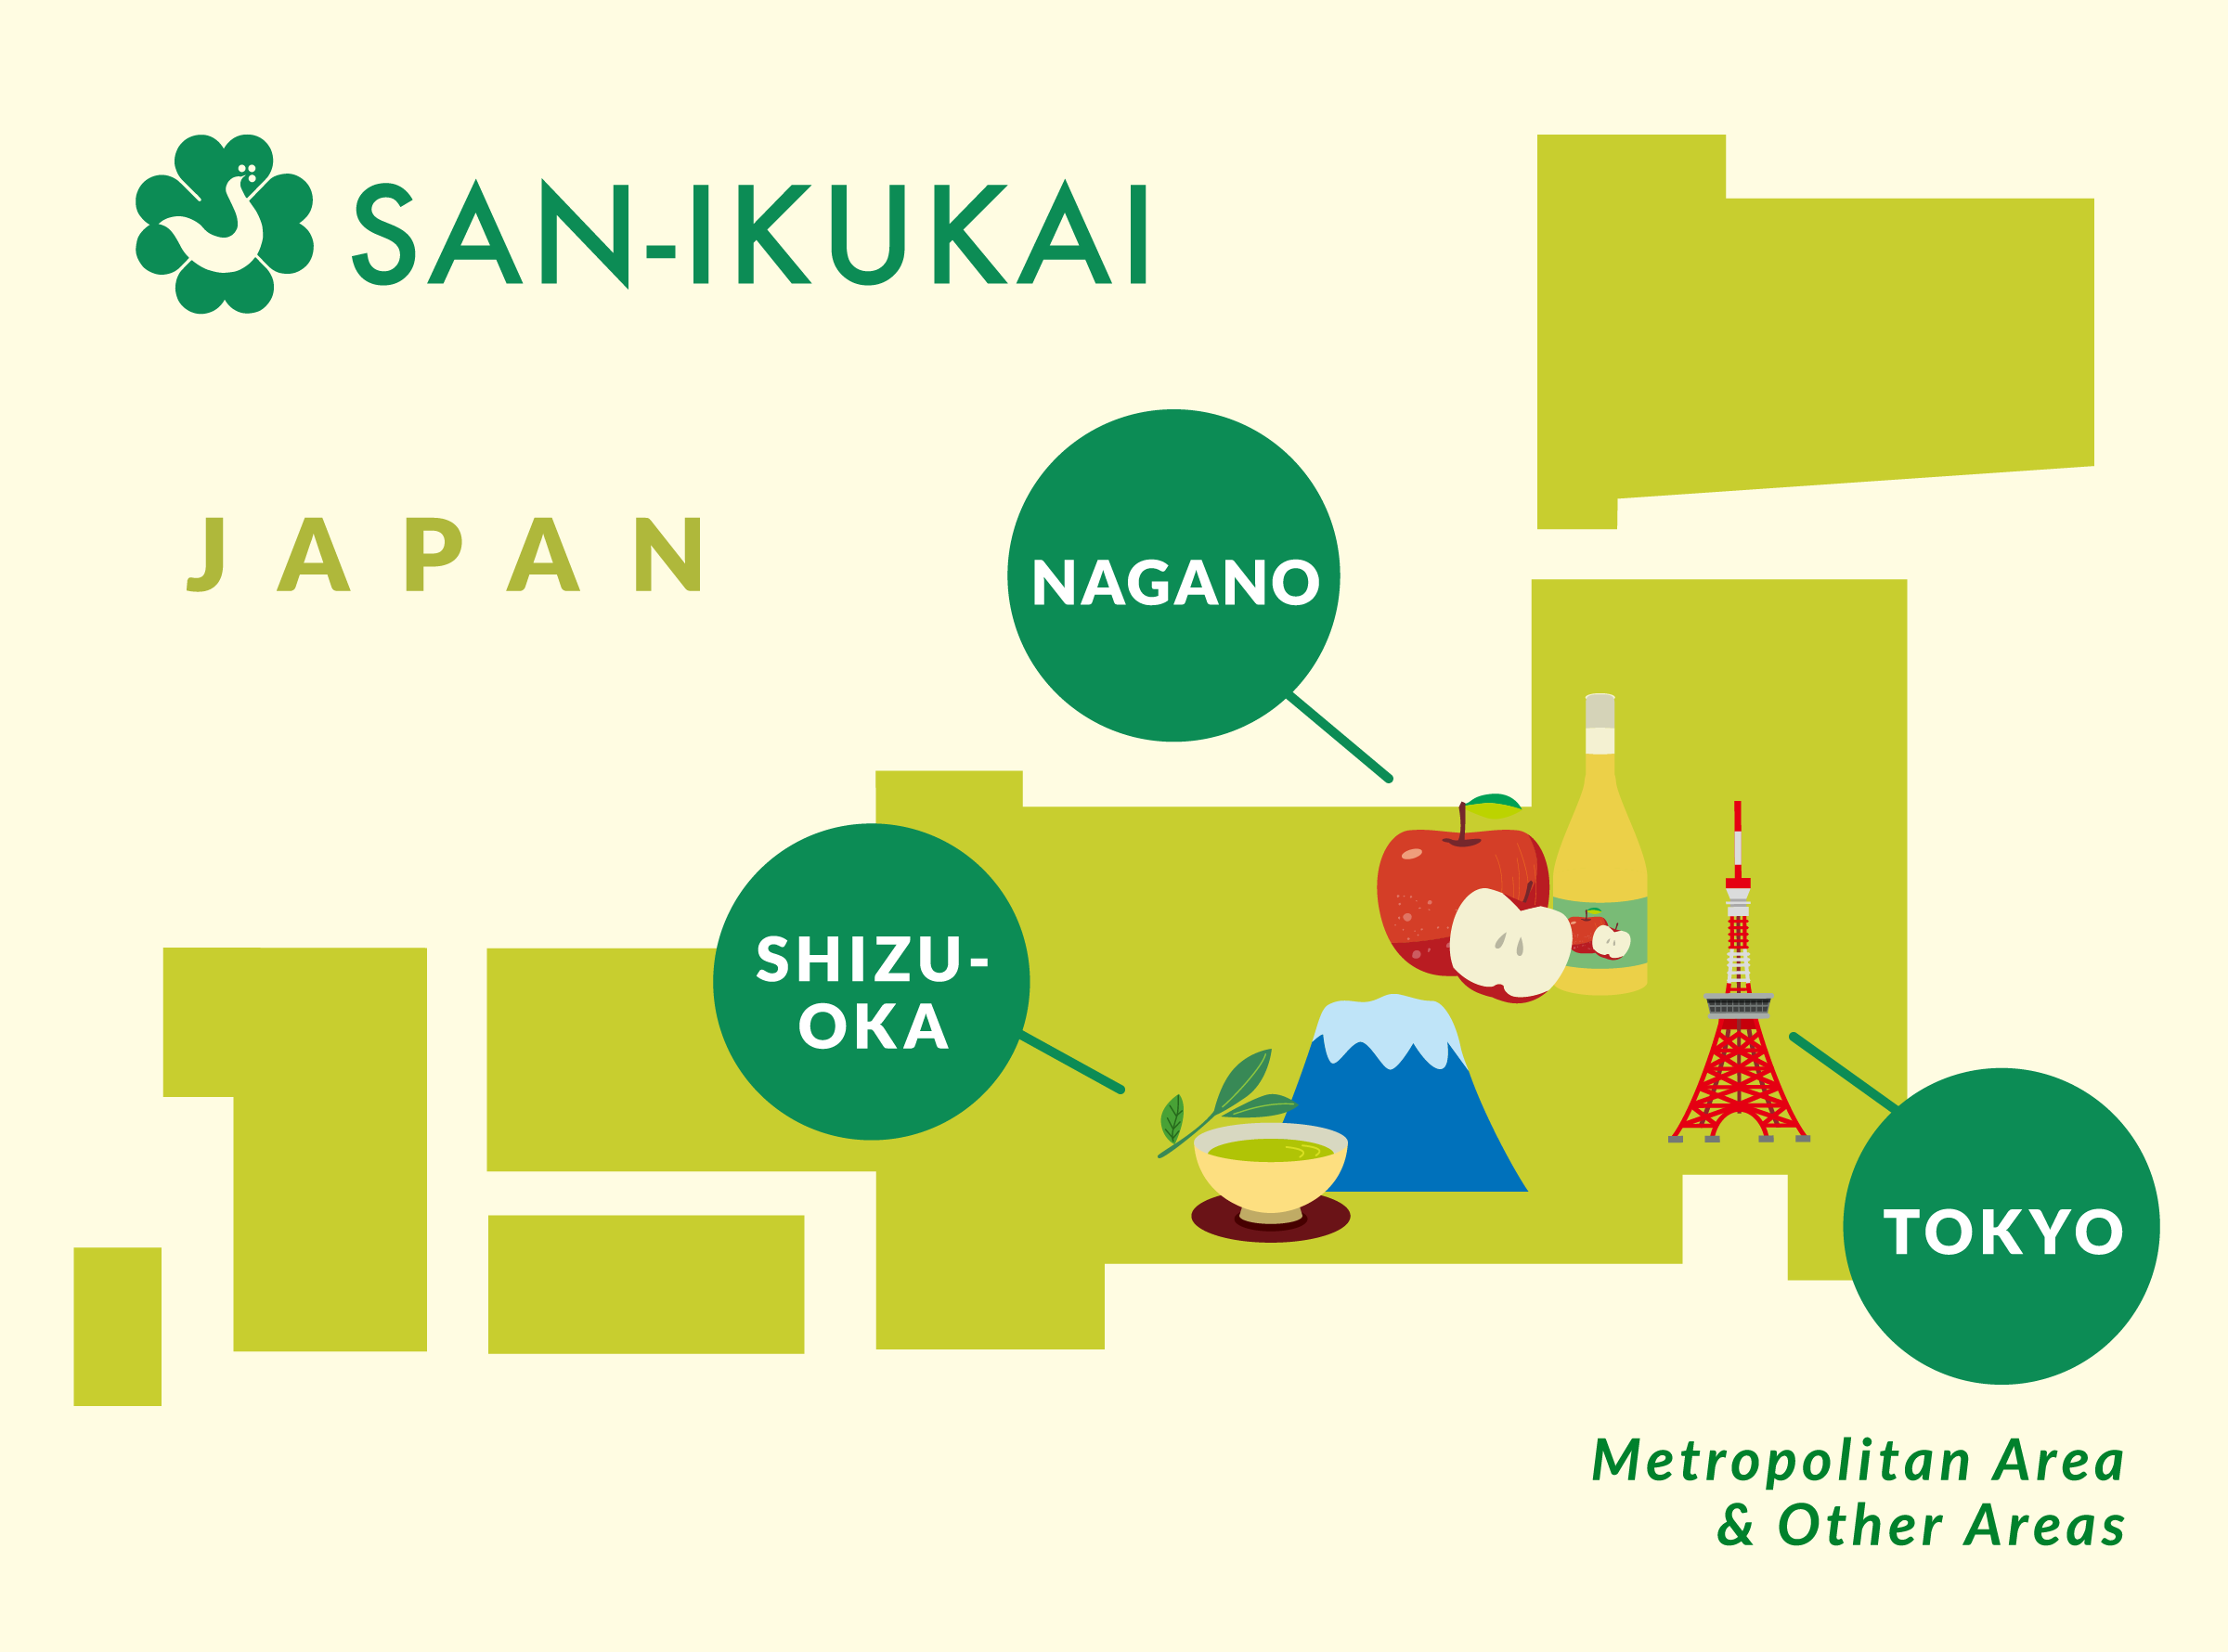 Map of San-ikukai offices in Japan